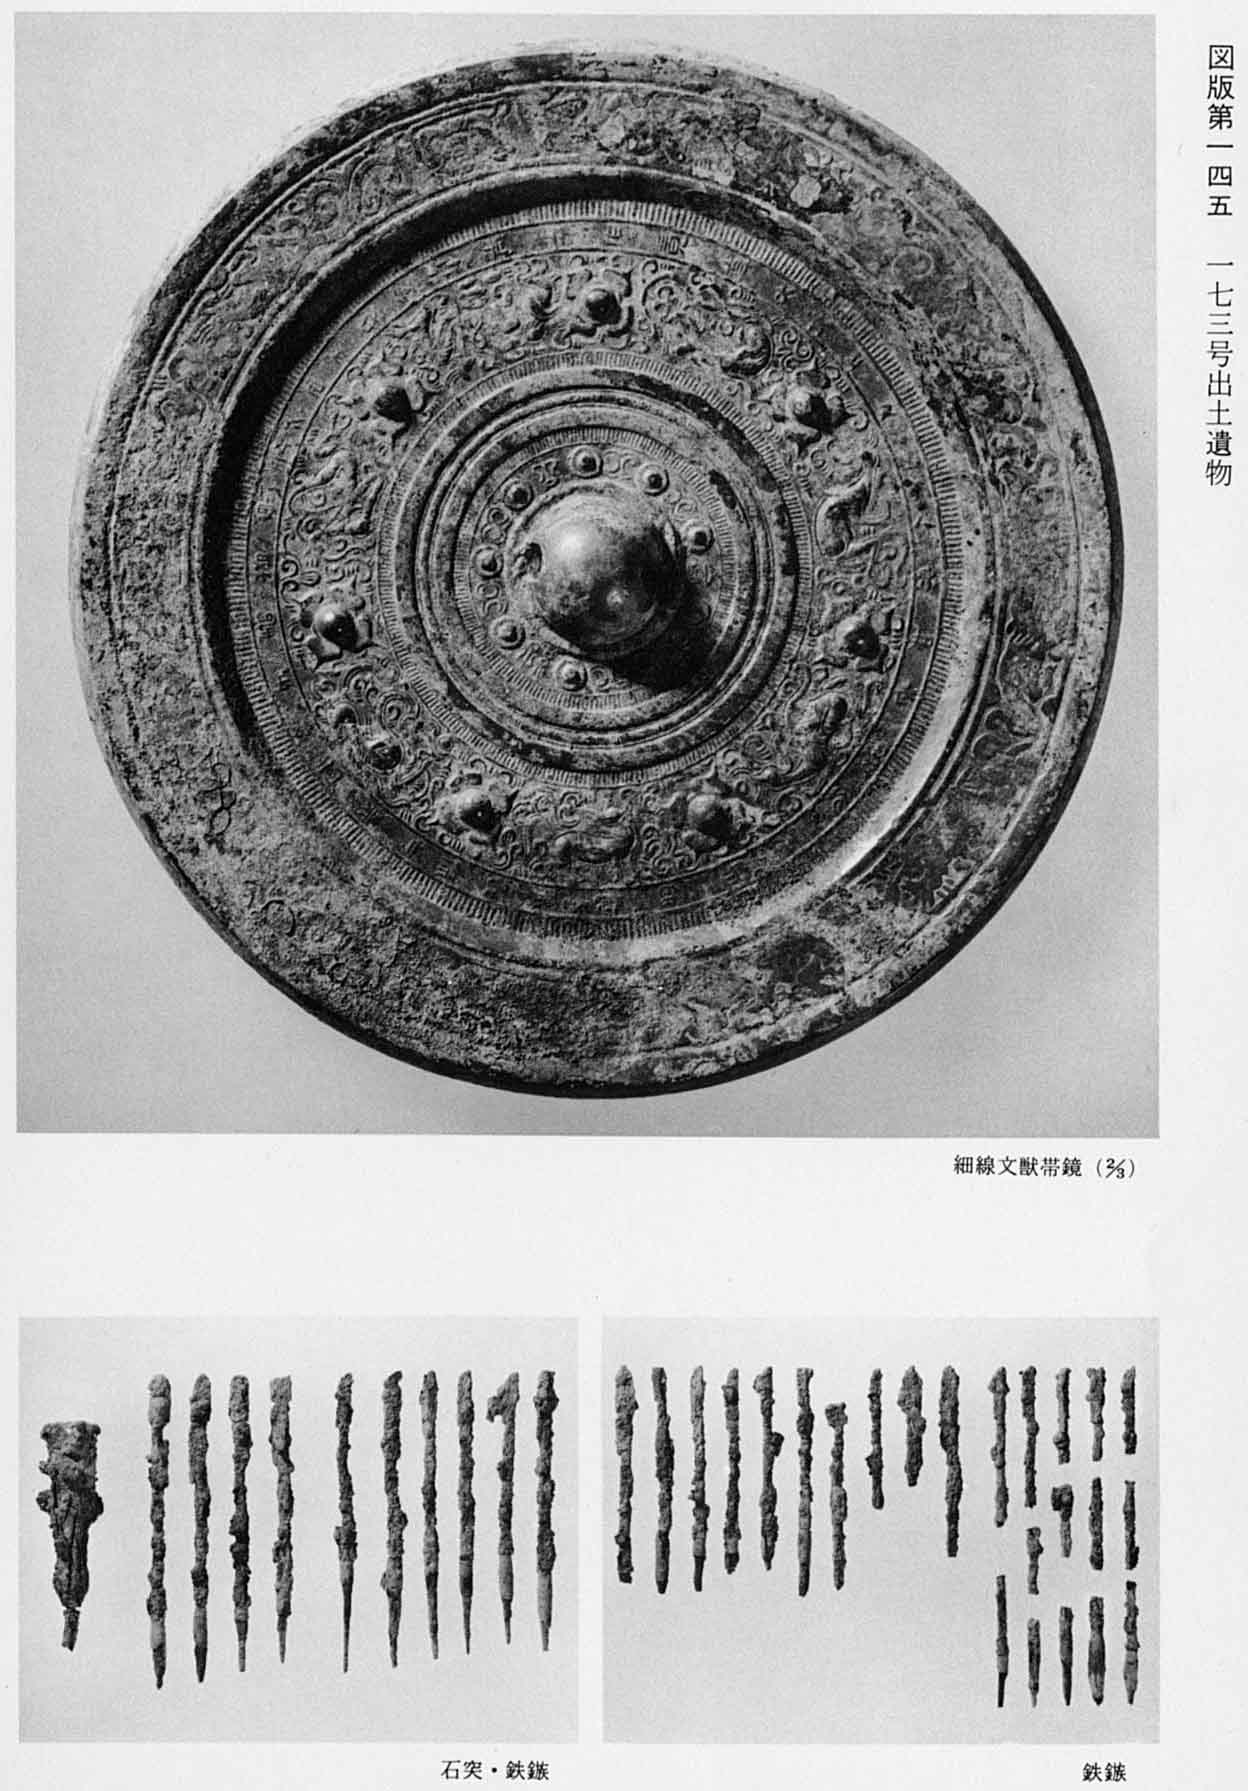 獣の紋様が描かれている鏡の写真と、鉄の矢じりが並べられている2枚の写真（図版145 173号出土遺物）